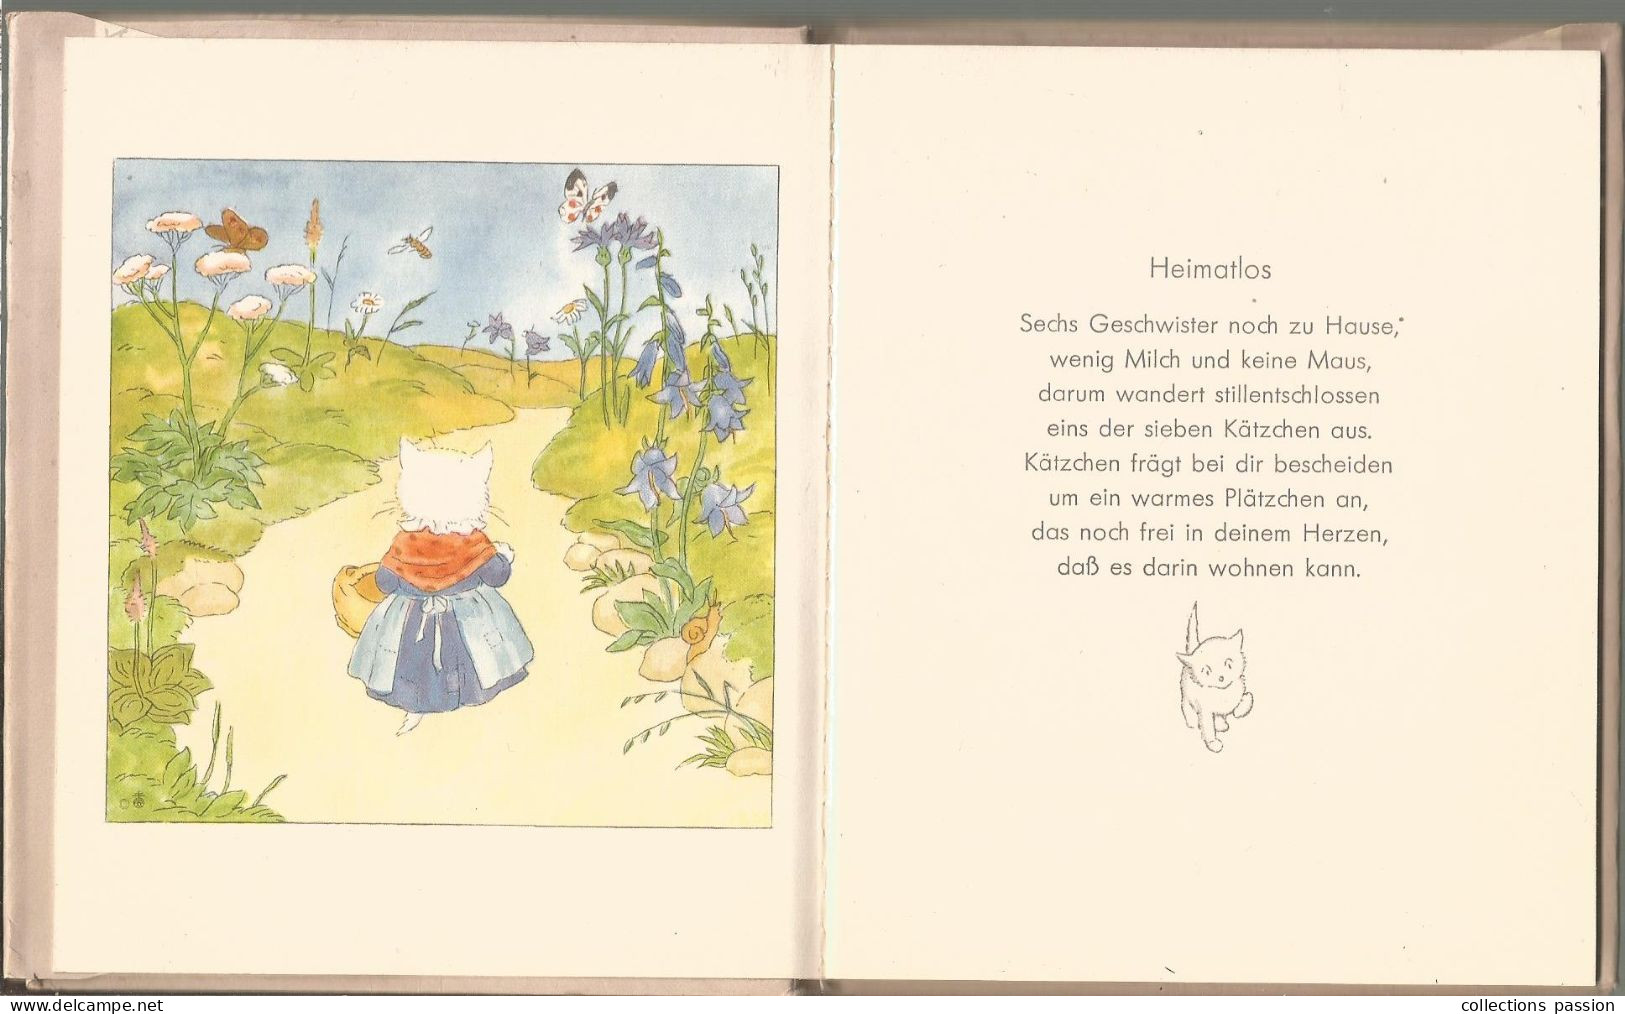 Livre Pour Enfants, MIAU! , Ida Bohatta-Morpurgo, Verlag Josef Müller, München , 1936, 18 Pages, Frais Fr 3.95 E - Livres D'images